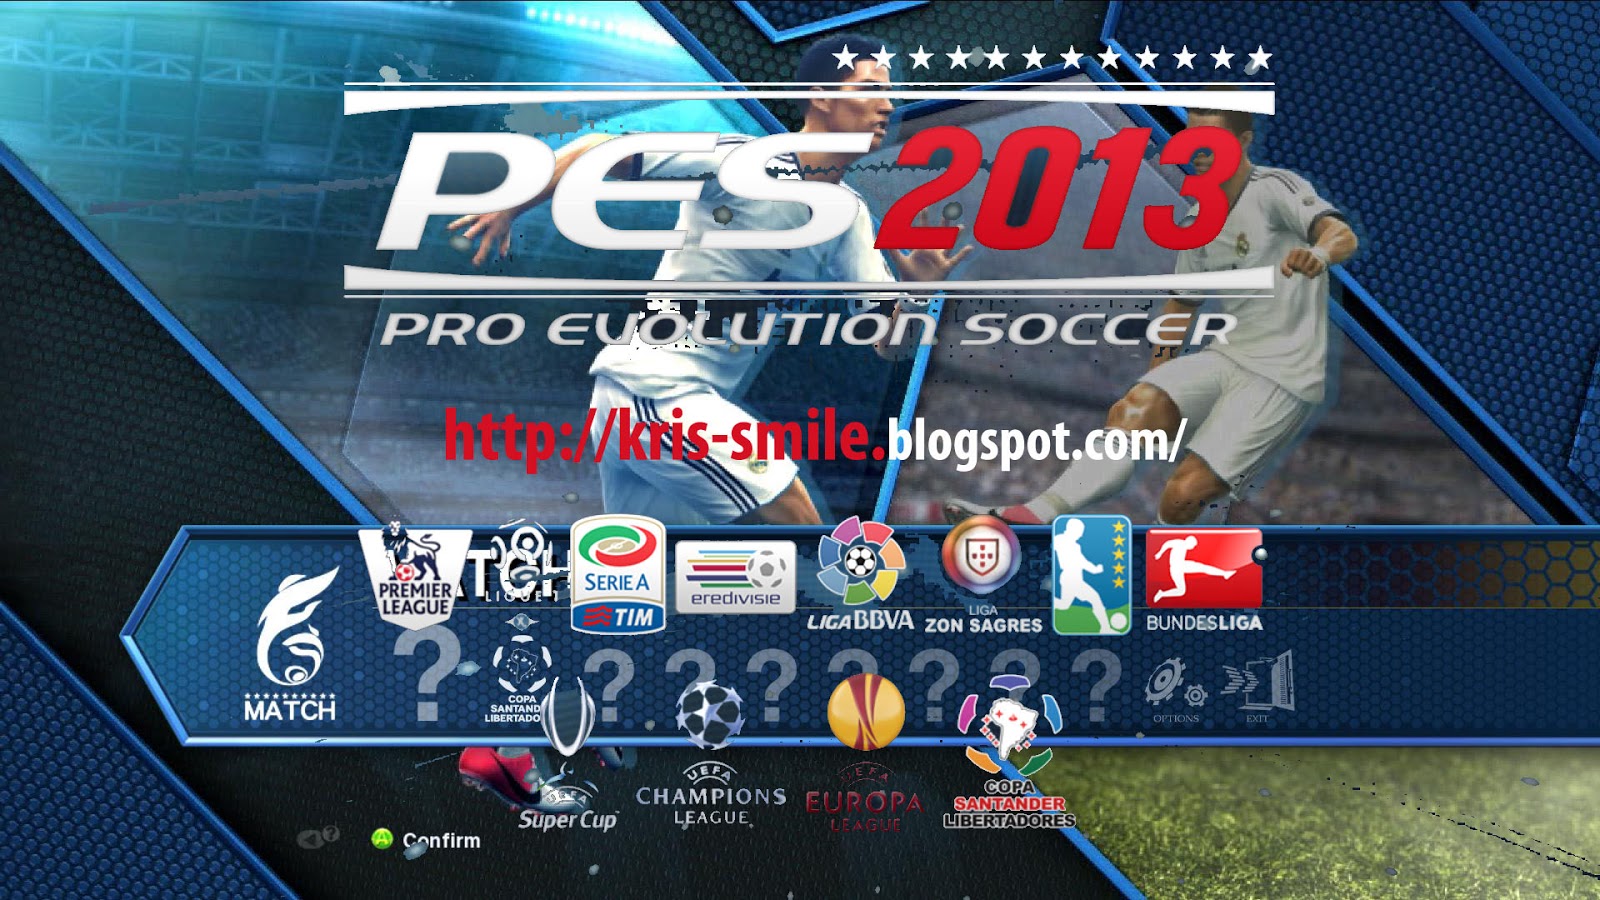 P a s регистрация. Pro Evolution Soccer 2013. Pro Evolution Soccer черный мяч состав. Пс3 футбол 2013 года фото в игровых клубах.